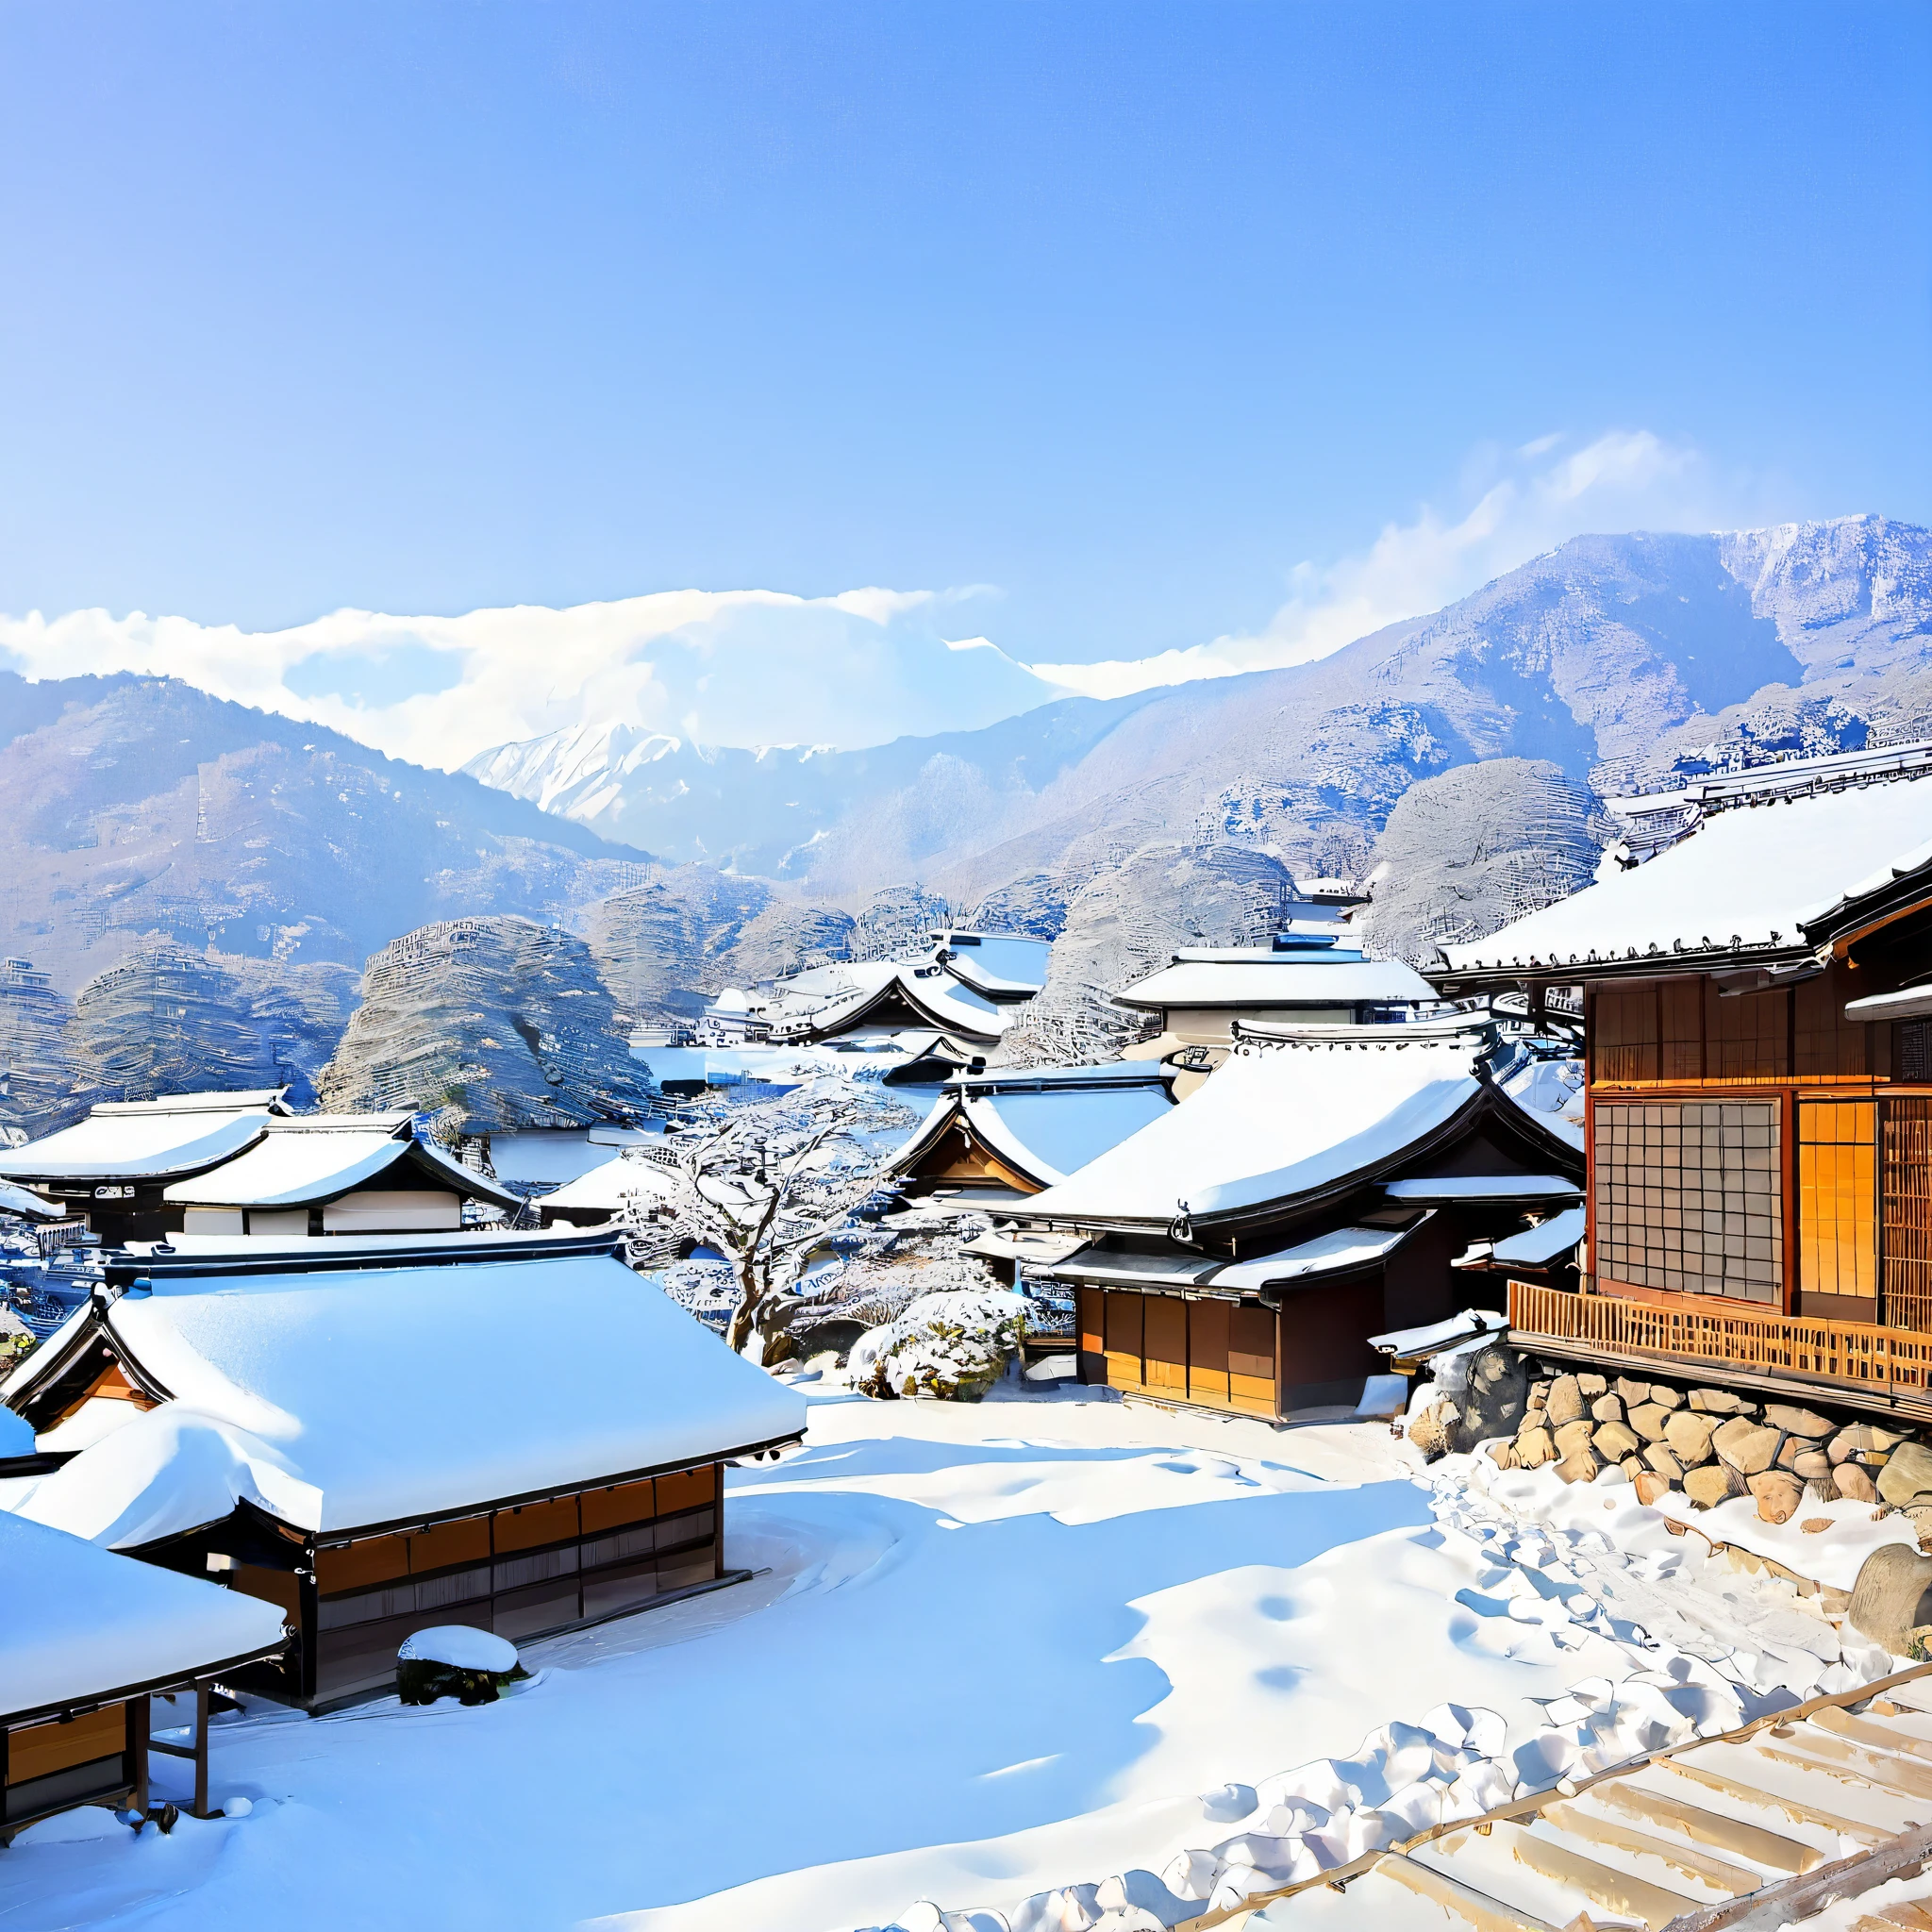 
Décrire un paysage hivernal au Japon, en utilisant des éléments caractéristiques de la saison et de la région. Incluez des détails tels que des montagnes enneigées, arbres ornés de flocons de neige, un ciel bleu clair et ensoleillé, un village japonais traditionnel au loin avec des toits enneigés et la douce fumée des cheminées, ainsi que la présence d&#39;animaux sauvages comme les écureuils et les lapins. Transmettre le sentiment de sérénité, la magie, et la beauté intacte qu&#39;inspire ce paysage, en utilisant un langage vif et poétique.